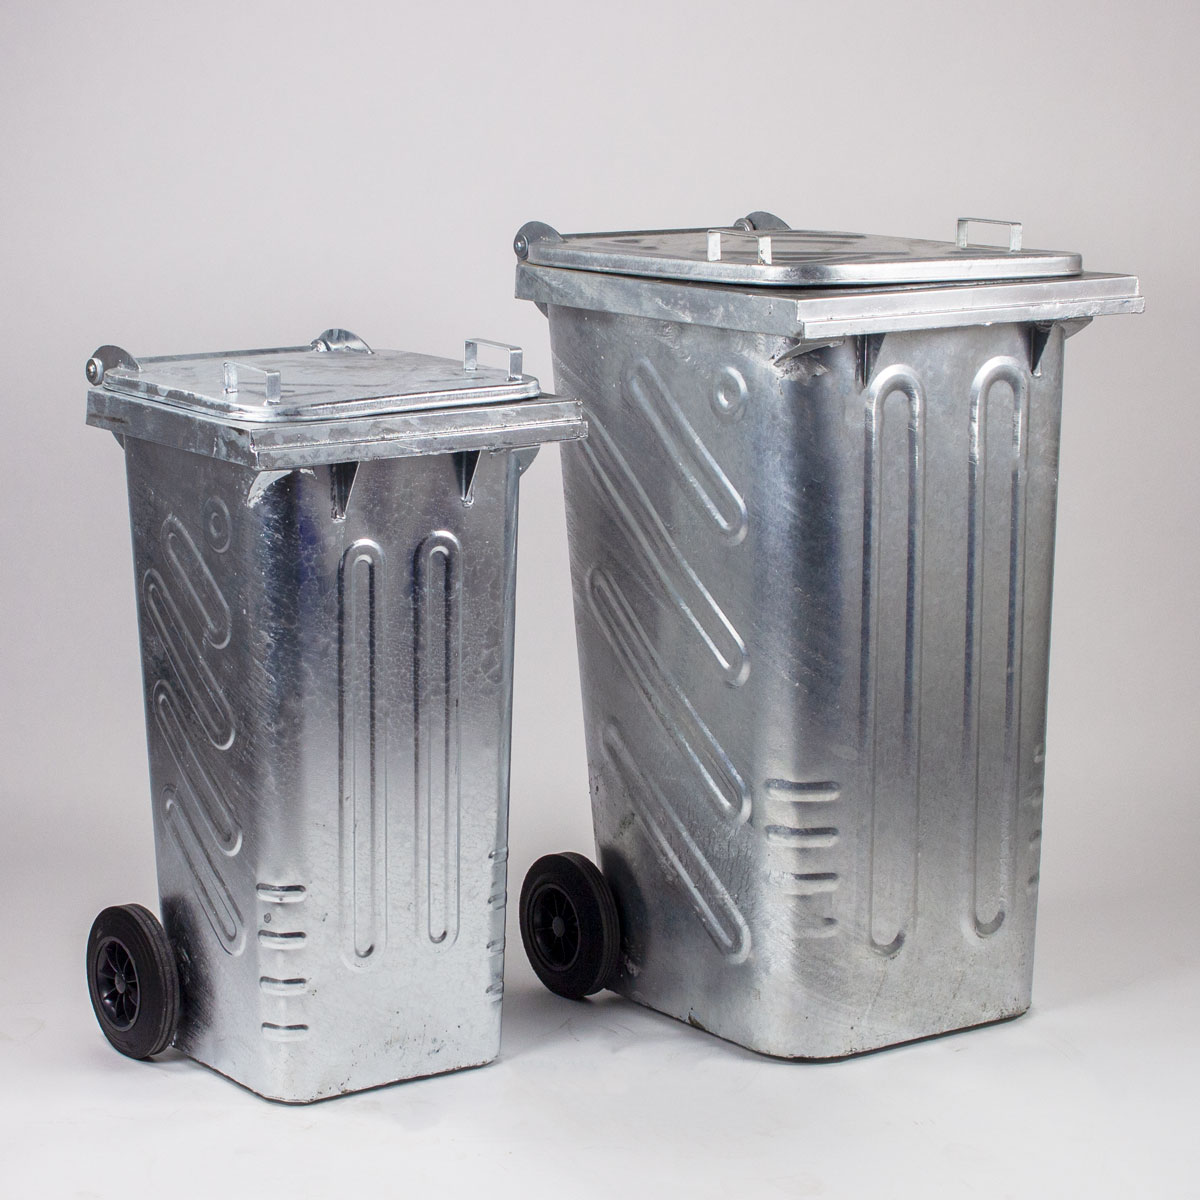 Conteneur poubelle métallique - Propreté & Hygiène chez Bauquip